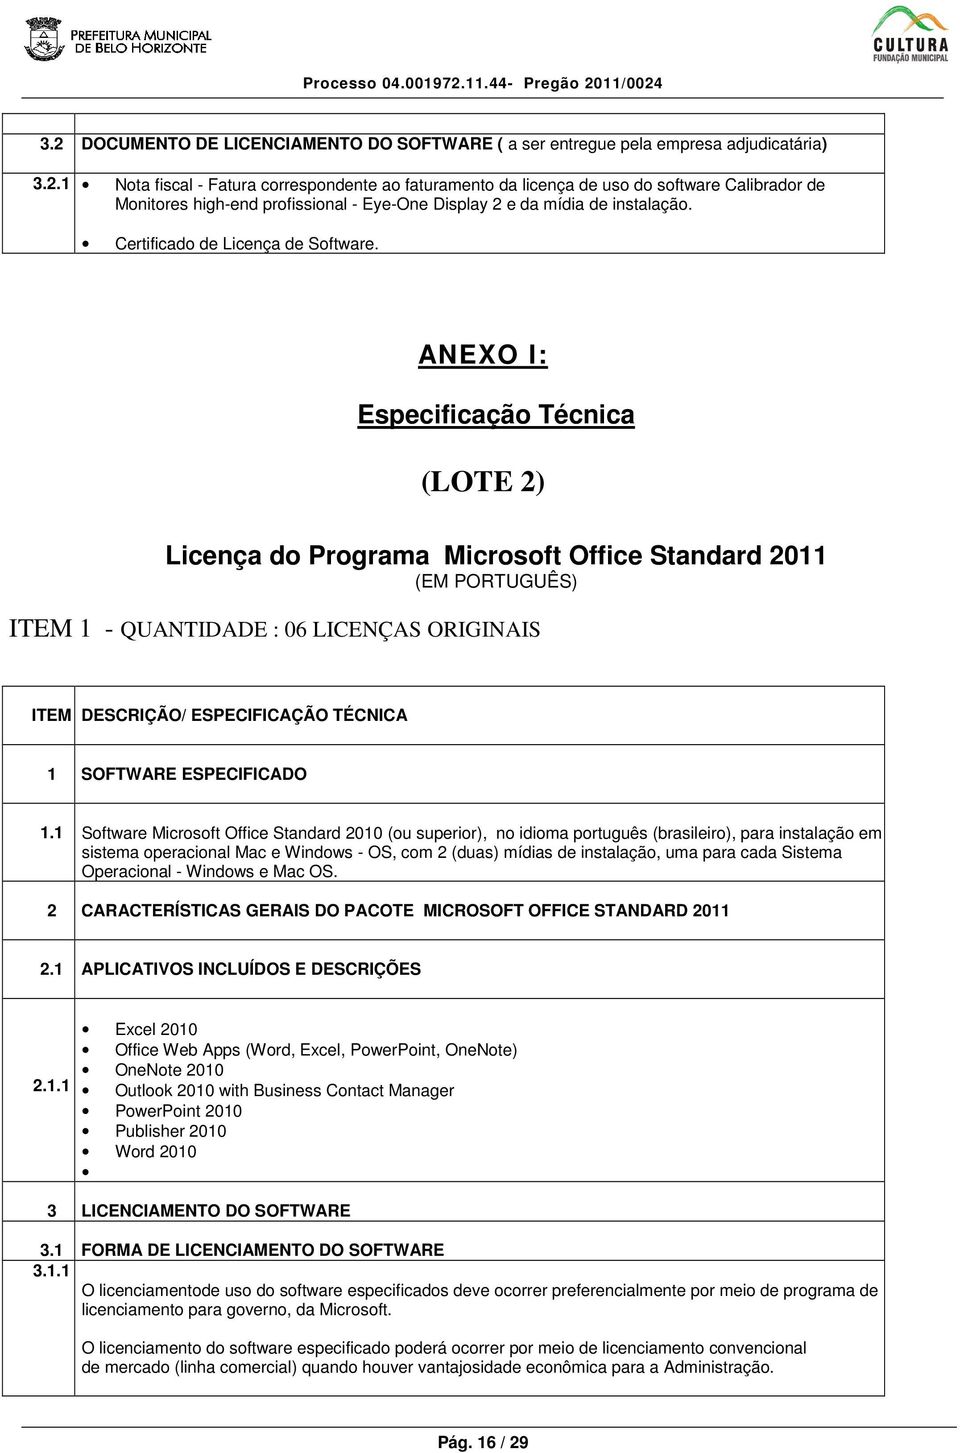 ANEXO I: Especificação Técnica (LOTE 2) Licença do Programa Microsoft Office Standard 2011 (EM PORTUGUÊS) ITEM 1 - QUANTIDADE : 06 LICENÇAS ORIGINAIS ITEM DESCRIÇÃO/ ESPECIFICAÇÃO TÉCNICA 1 SOFTWARE